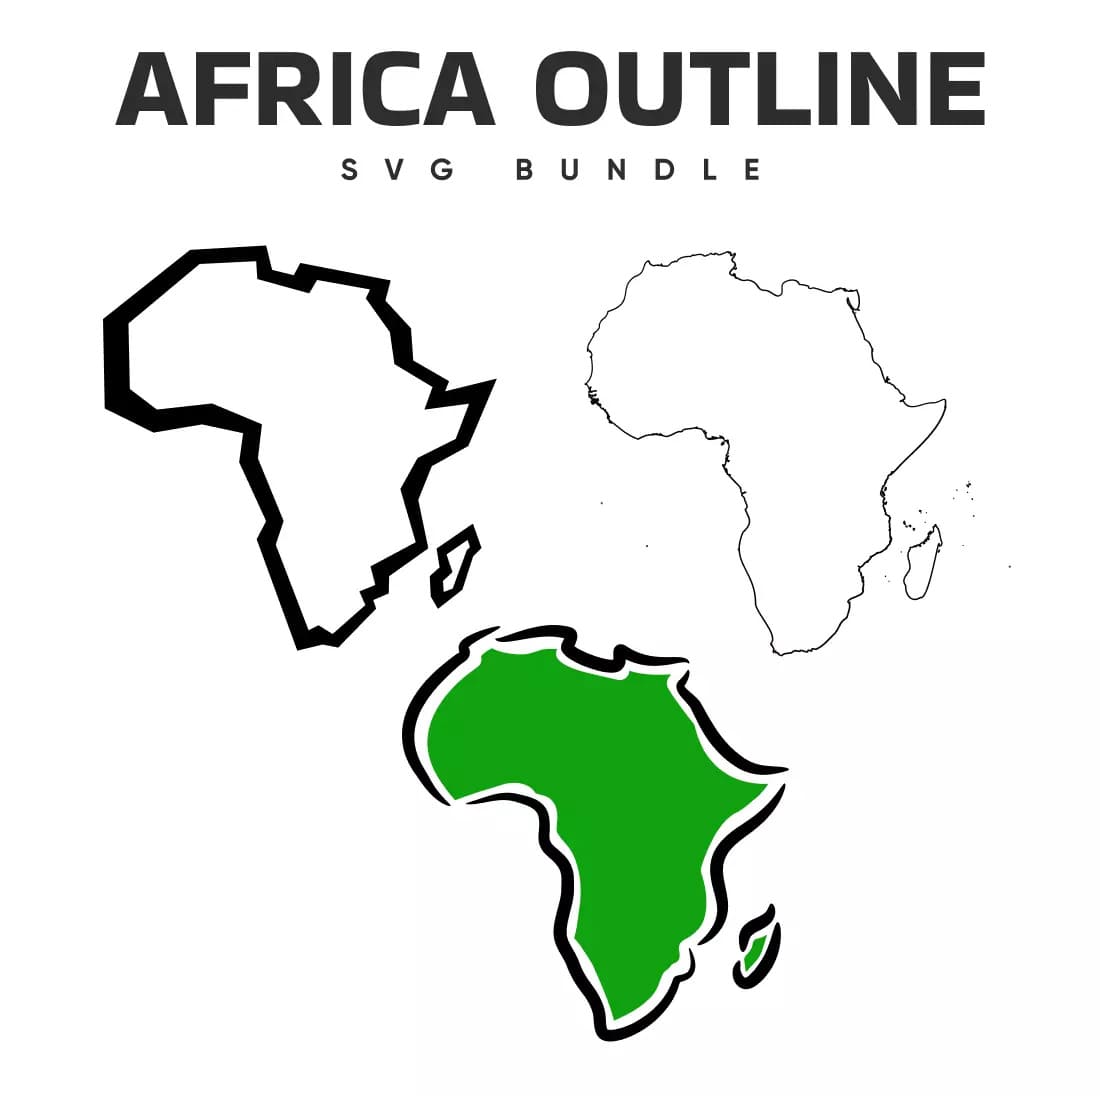 Africa Outline SVG Bundle Preview.